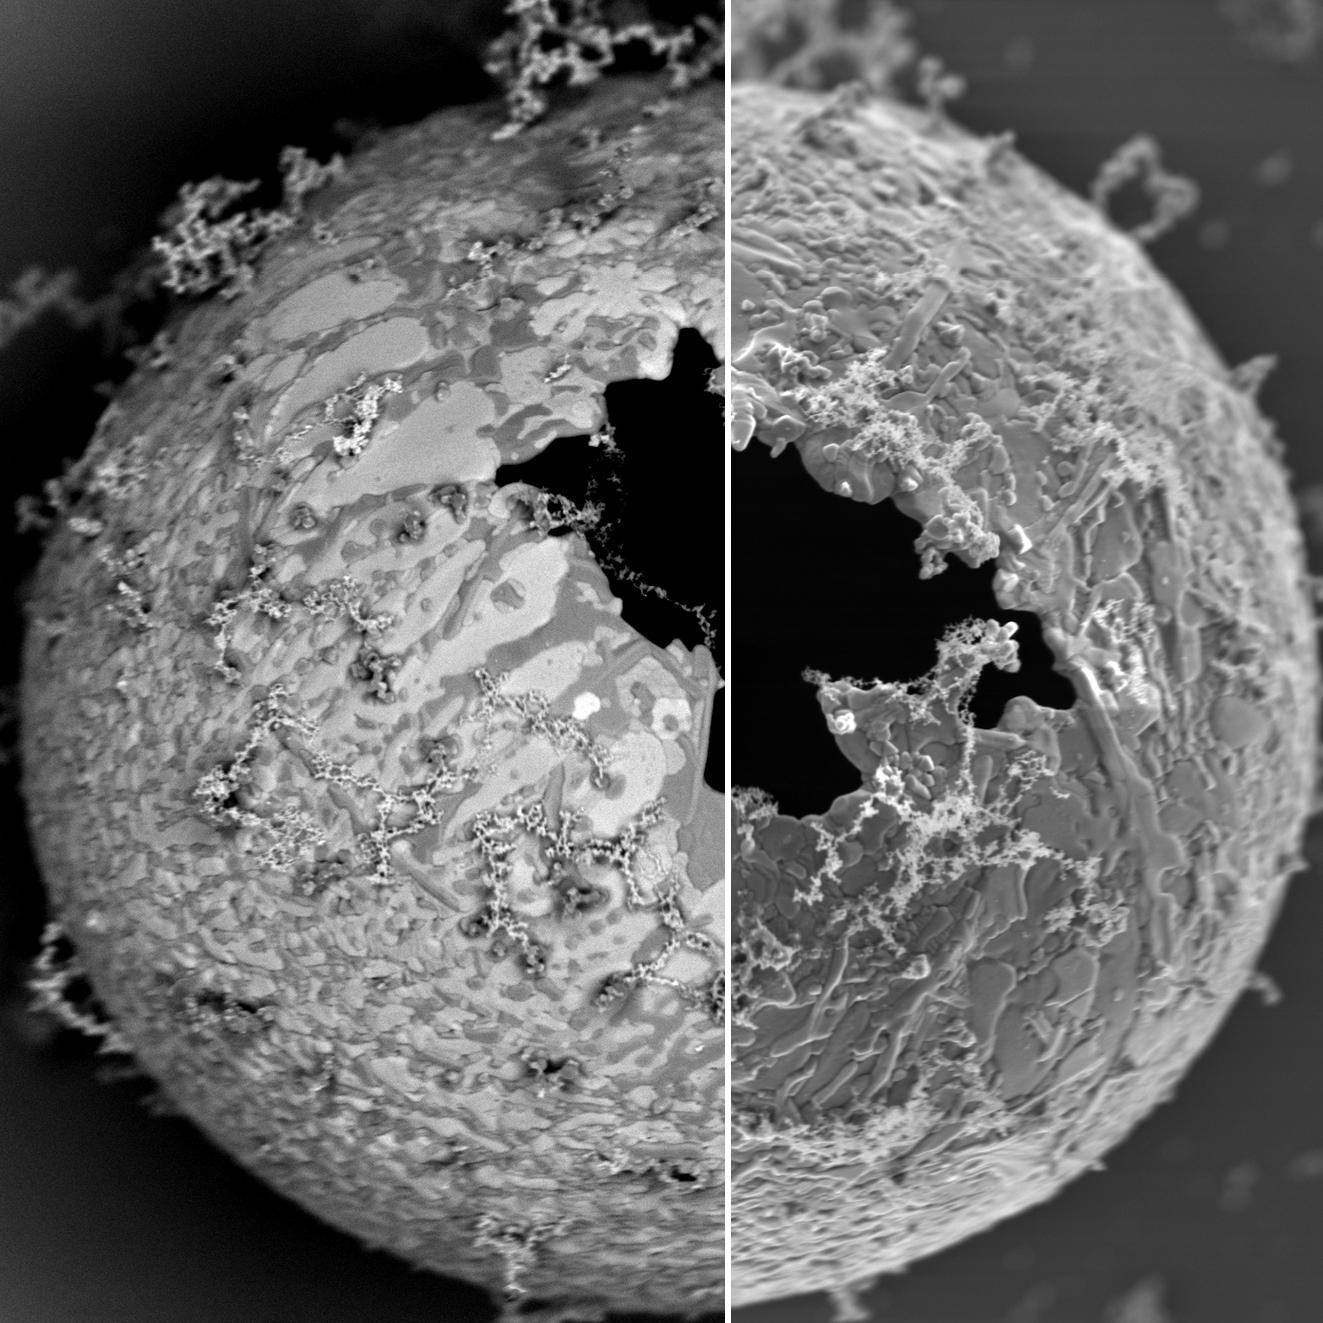 亜鉛粒子のInlens EsB画像（左）、Inlens SE画像（右）。